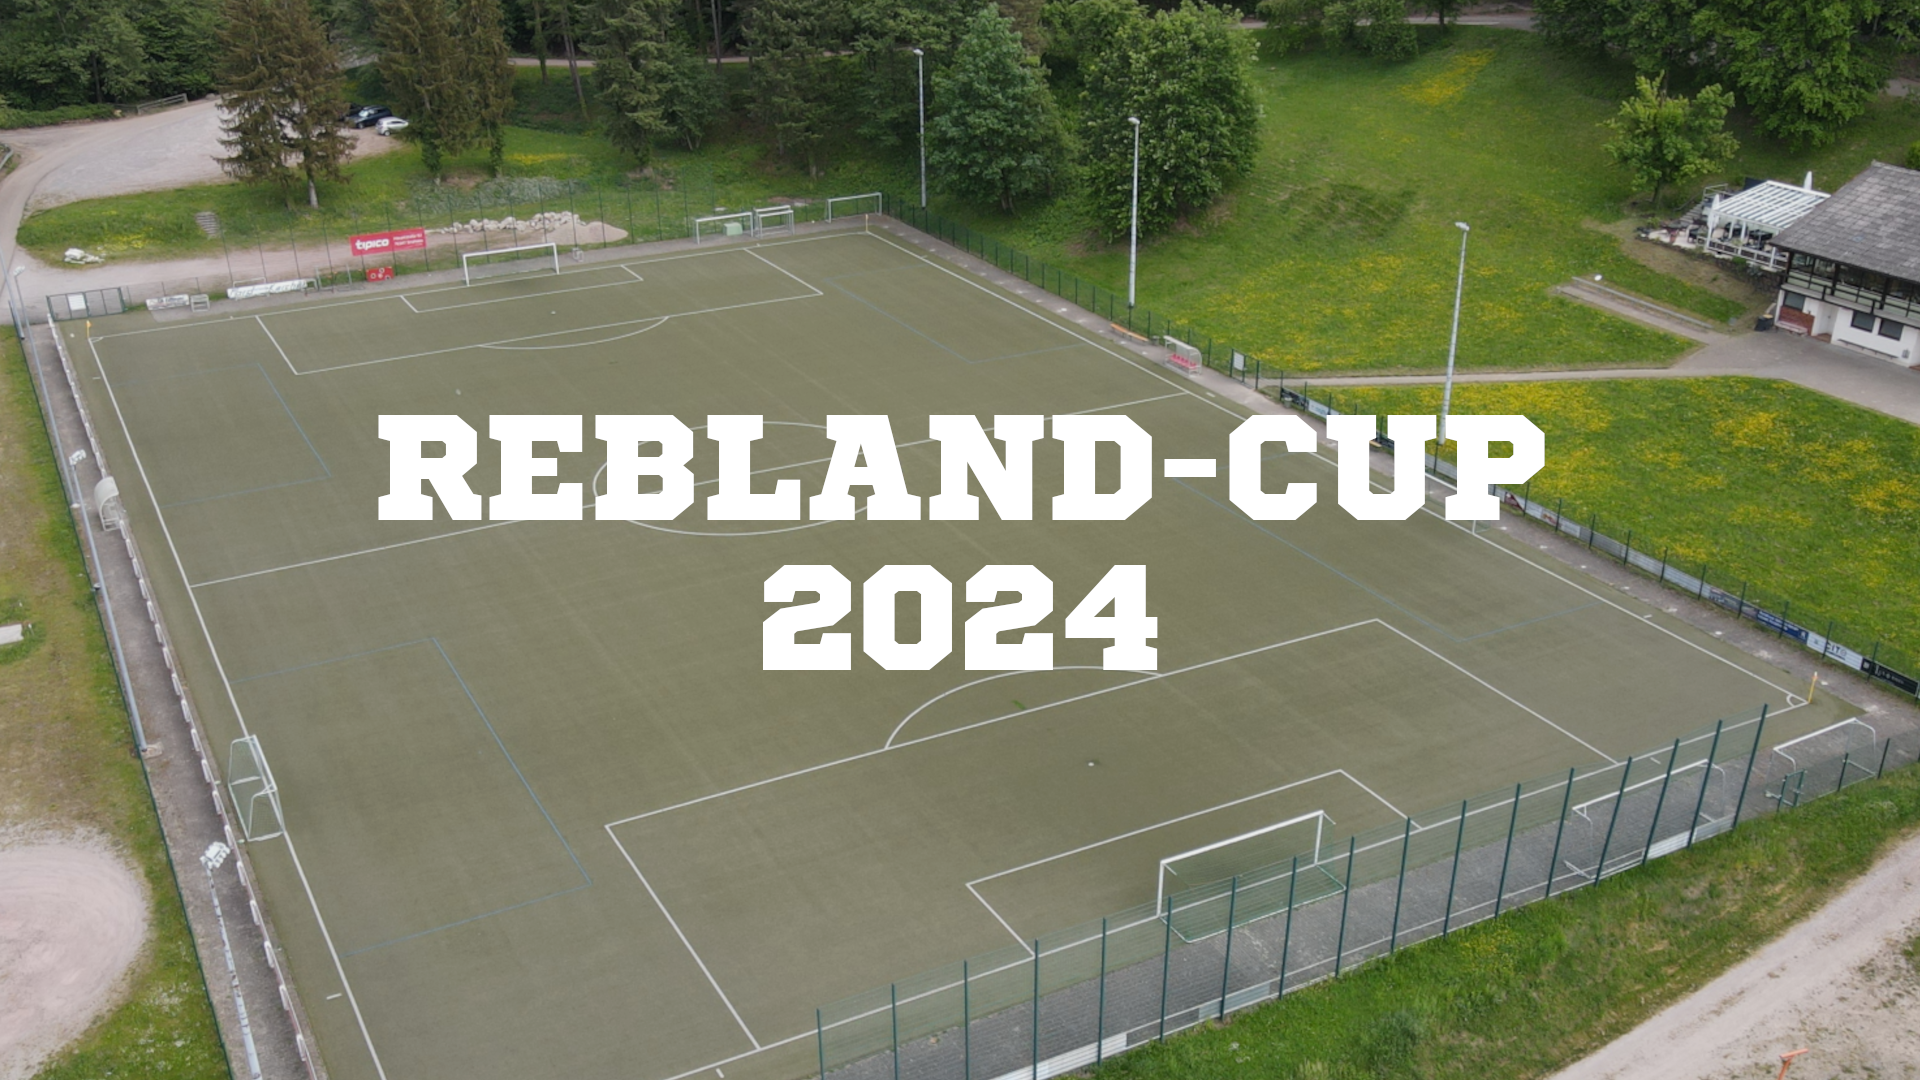 Rebland-Cup 2024 des FC Varnhalt (Banner)